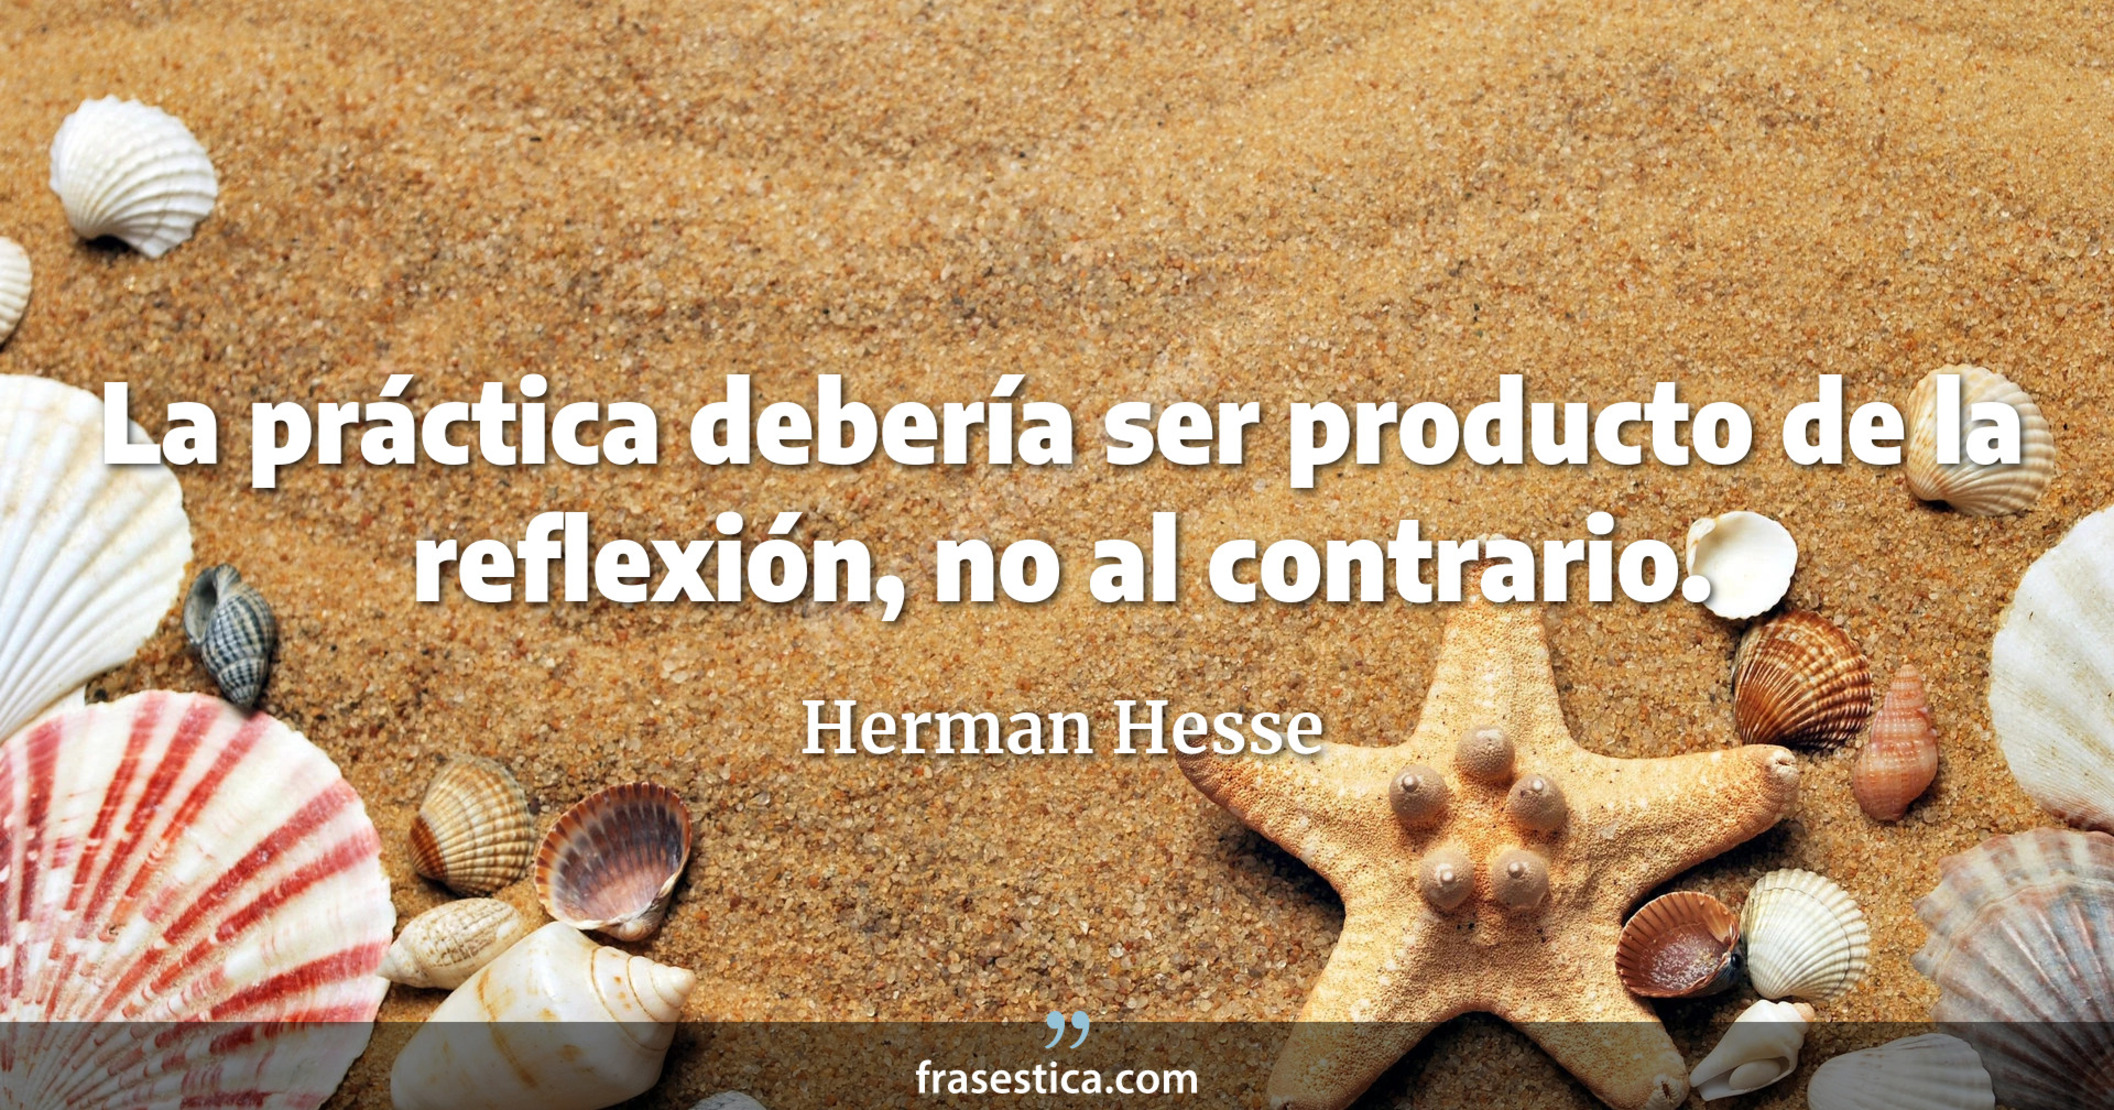 La práctica debería ser producto de la reflexión, no al contrario. - Herman Hesse